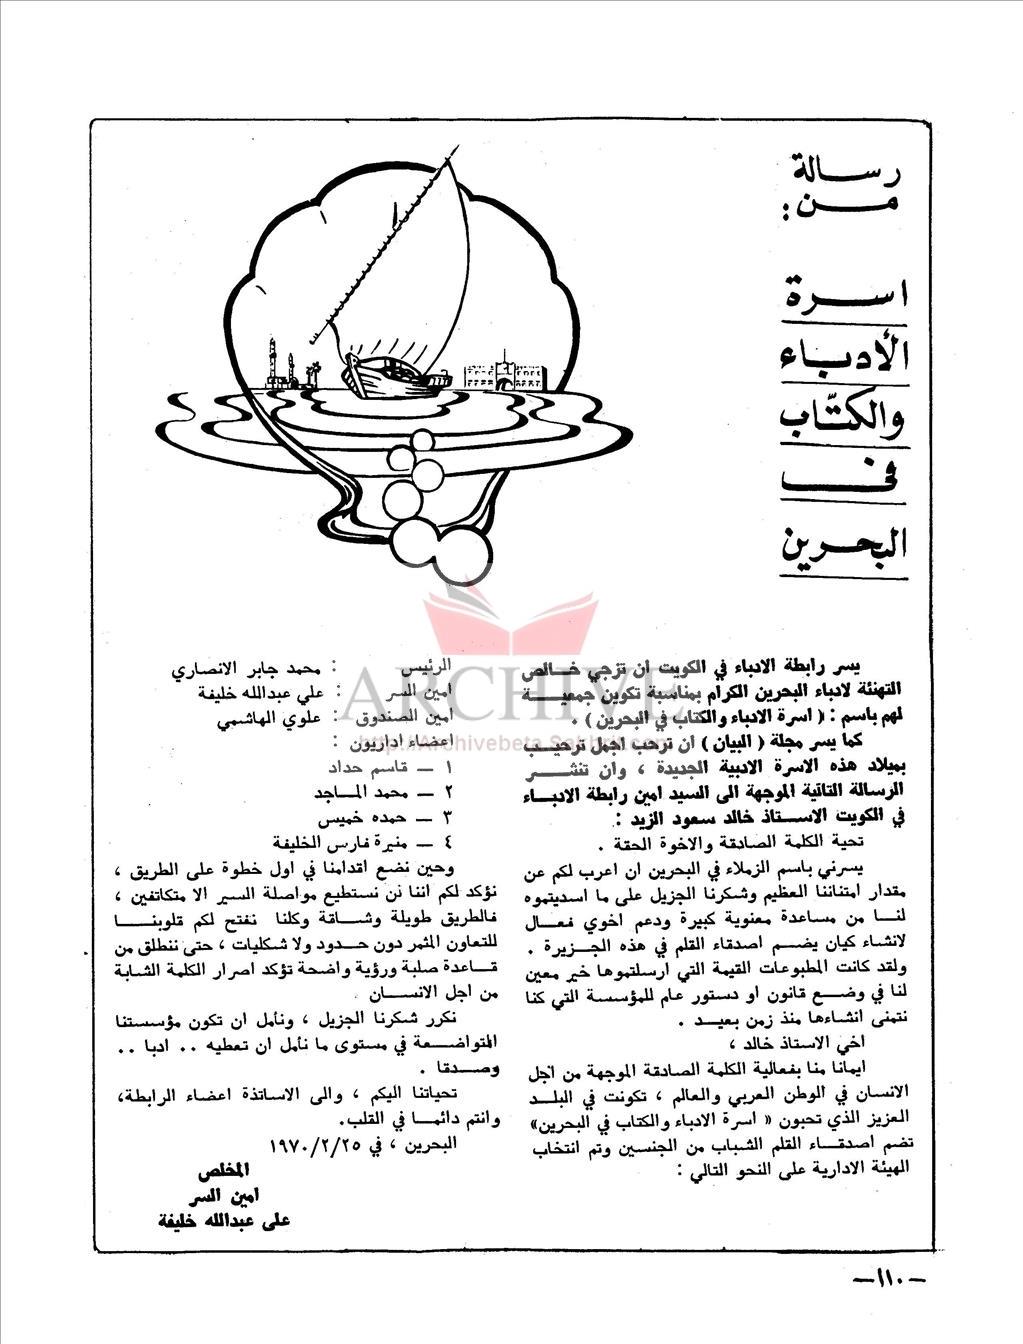 رسالة من أسرة الأدباء والكتاب في البحرين الى خالد سعود الزيد امين رابطة الادباء في الكويت.JPG